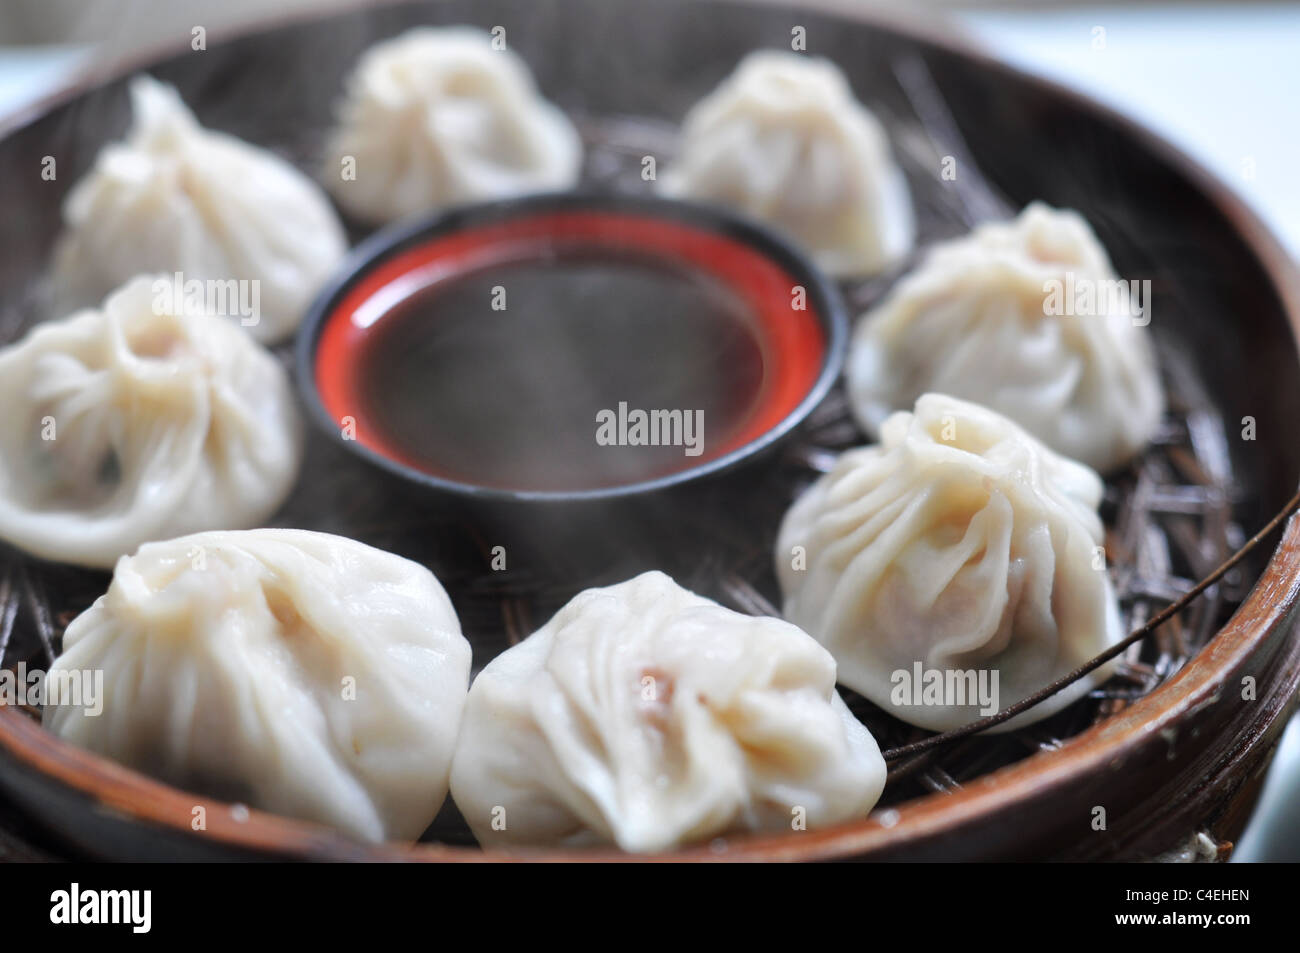 Steamed dumplings Stock Photo